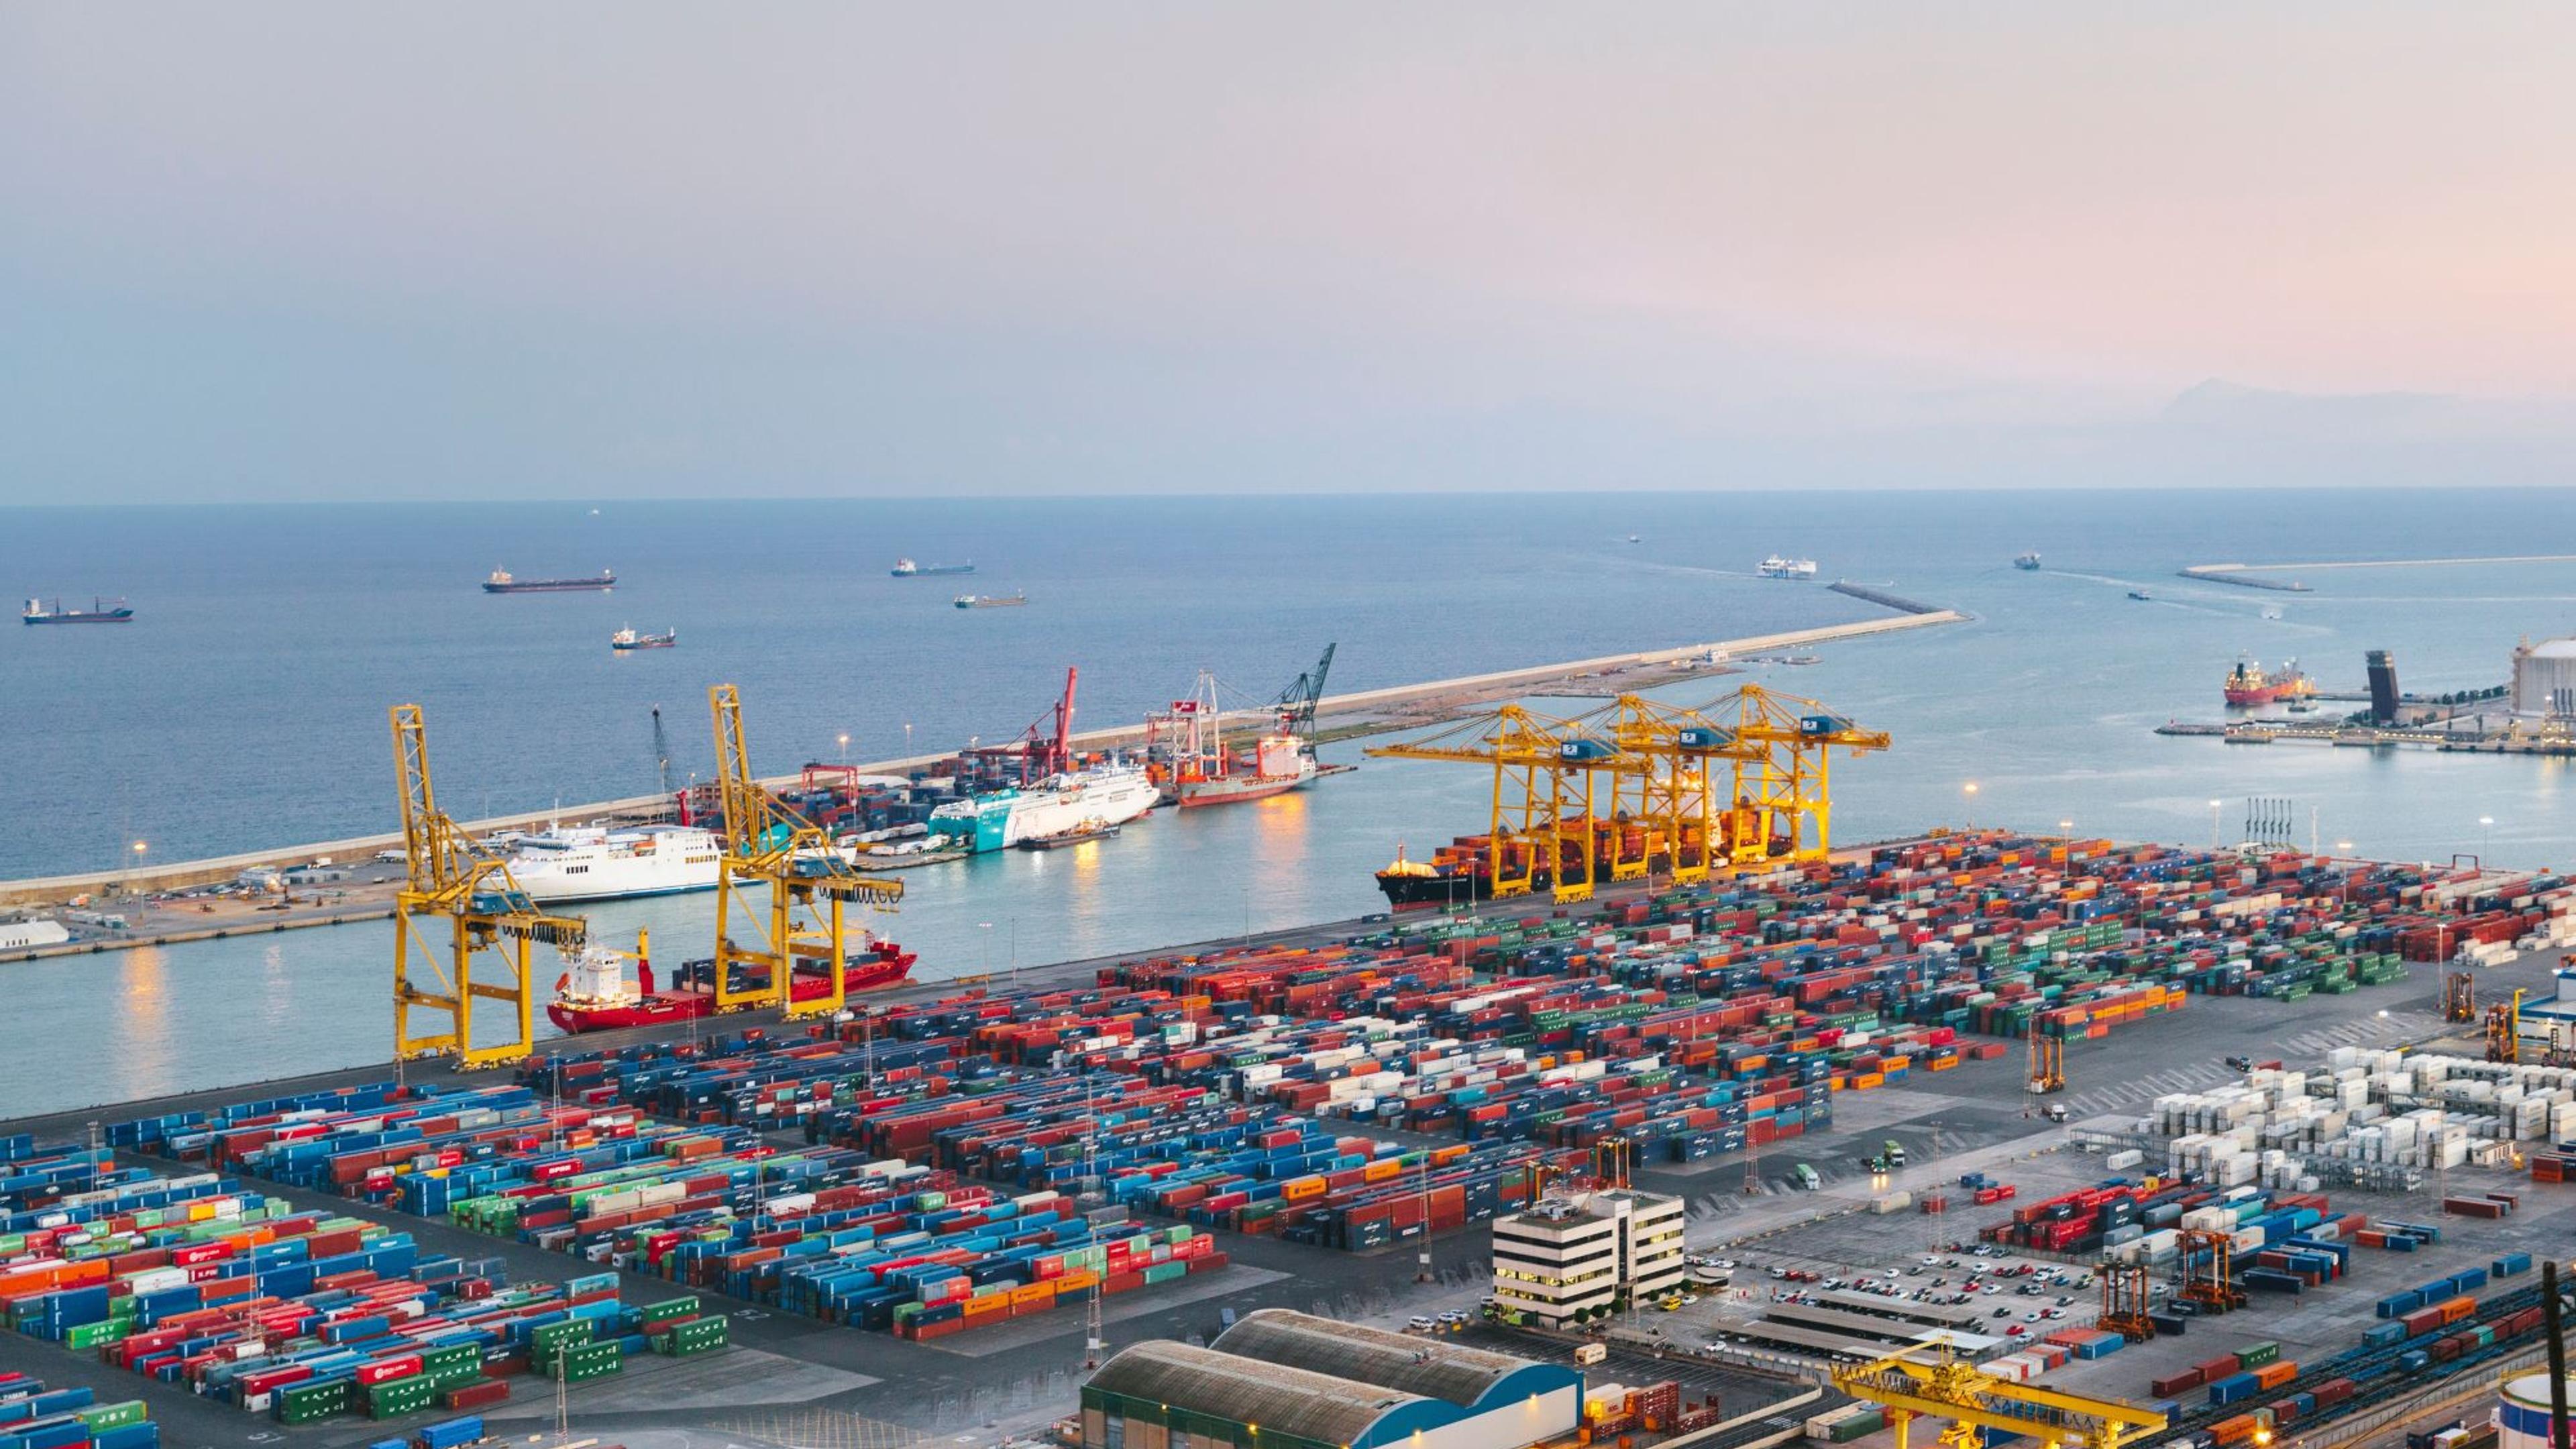 Flere av landene i Sør-Europa satser på grønn omstilling av skipsfarten. Det kan bety eksportmuligheter for norsk næringsliv. Her fra havneområdet i Barcelona i Spania.